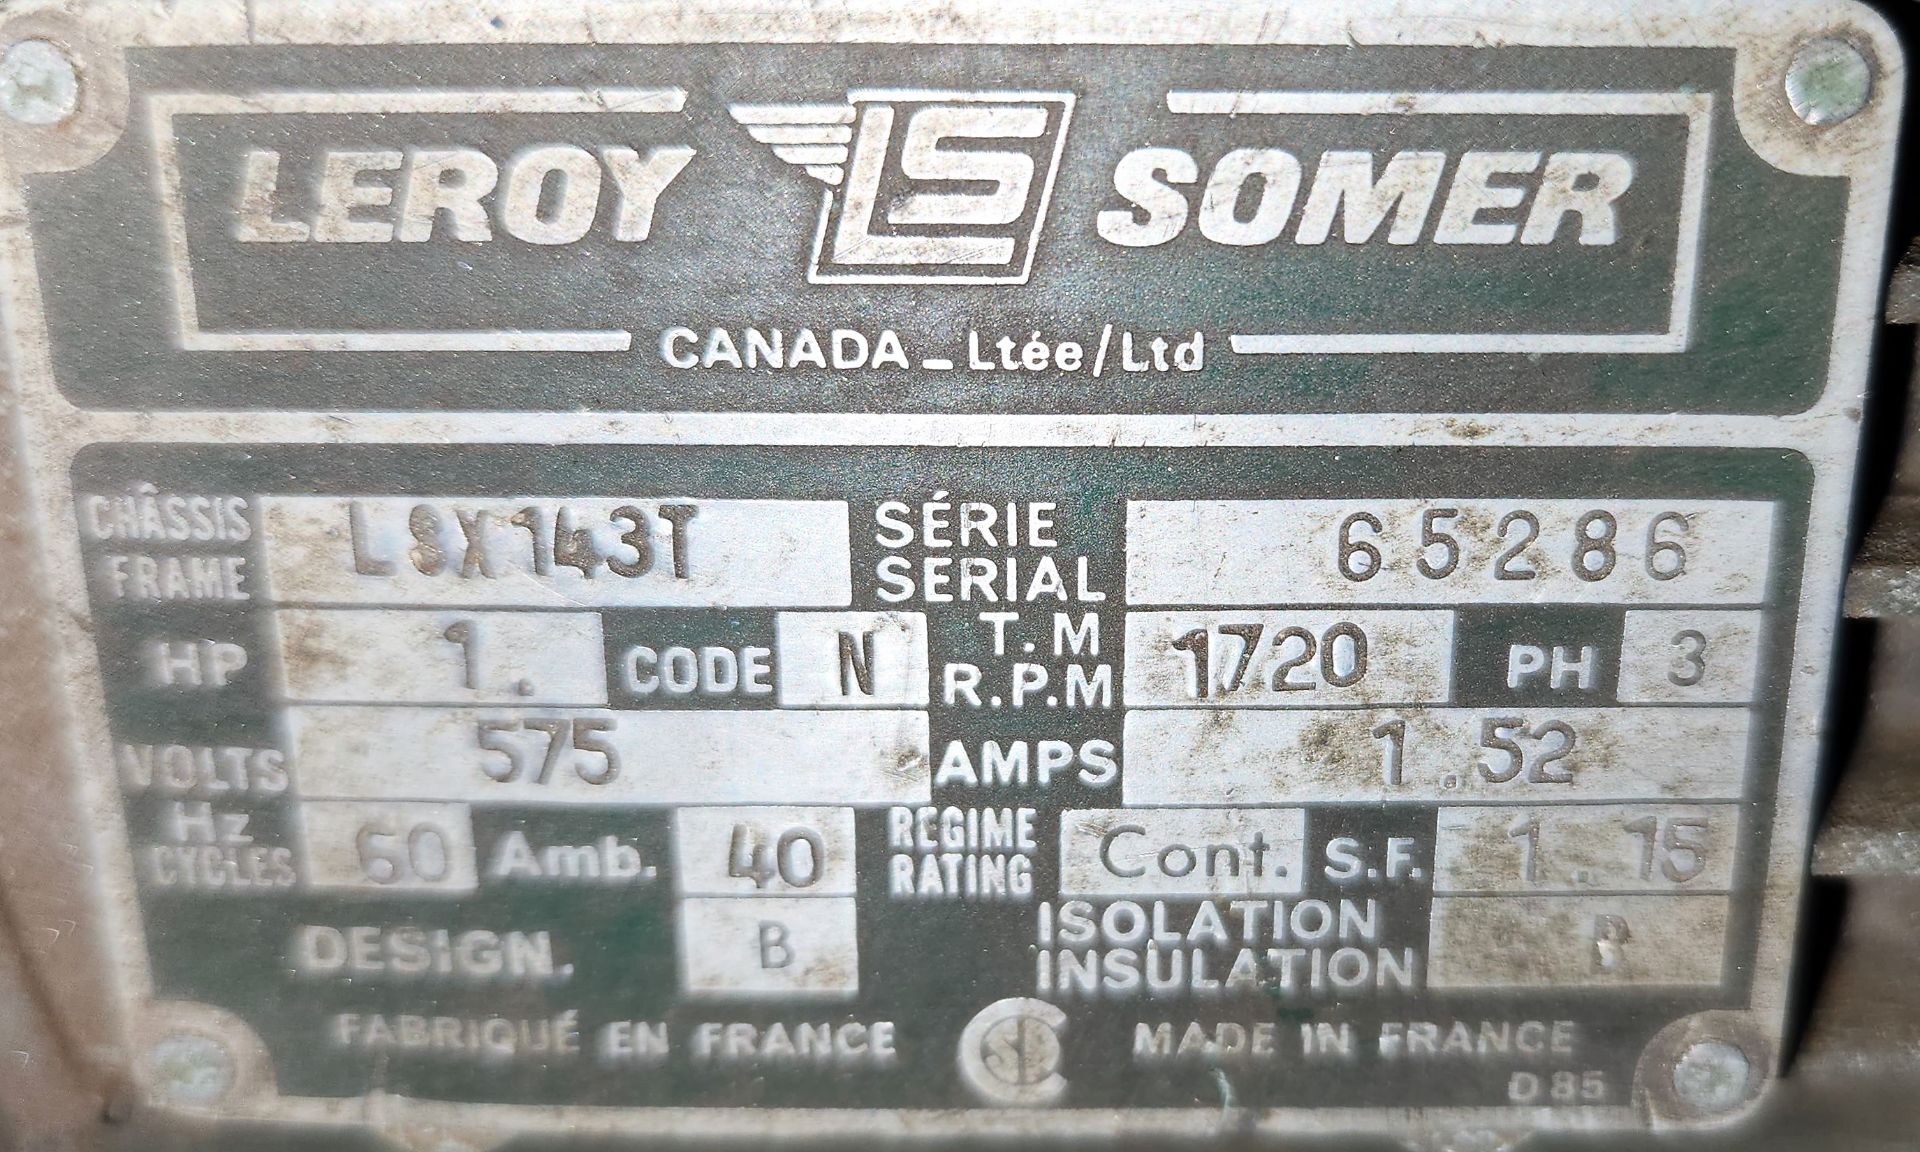 LEROY SOMER, LSX143T BELT SANDER, S/N 65286 - Image 2 of 2